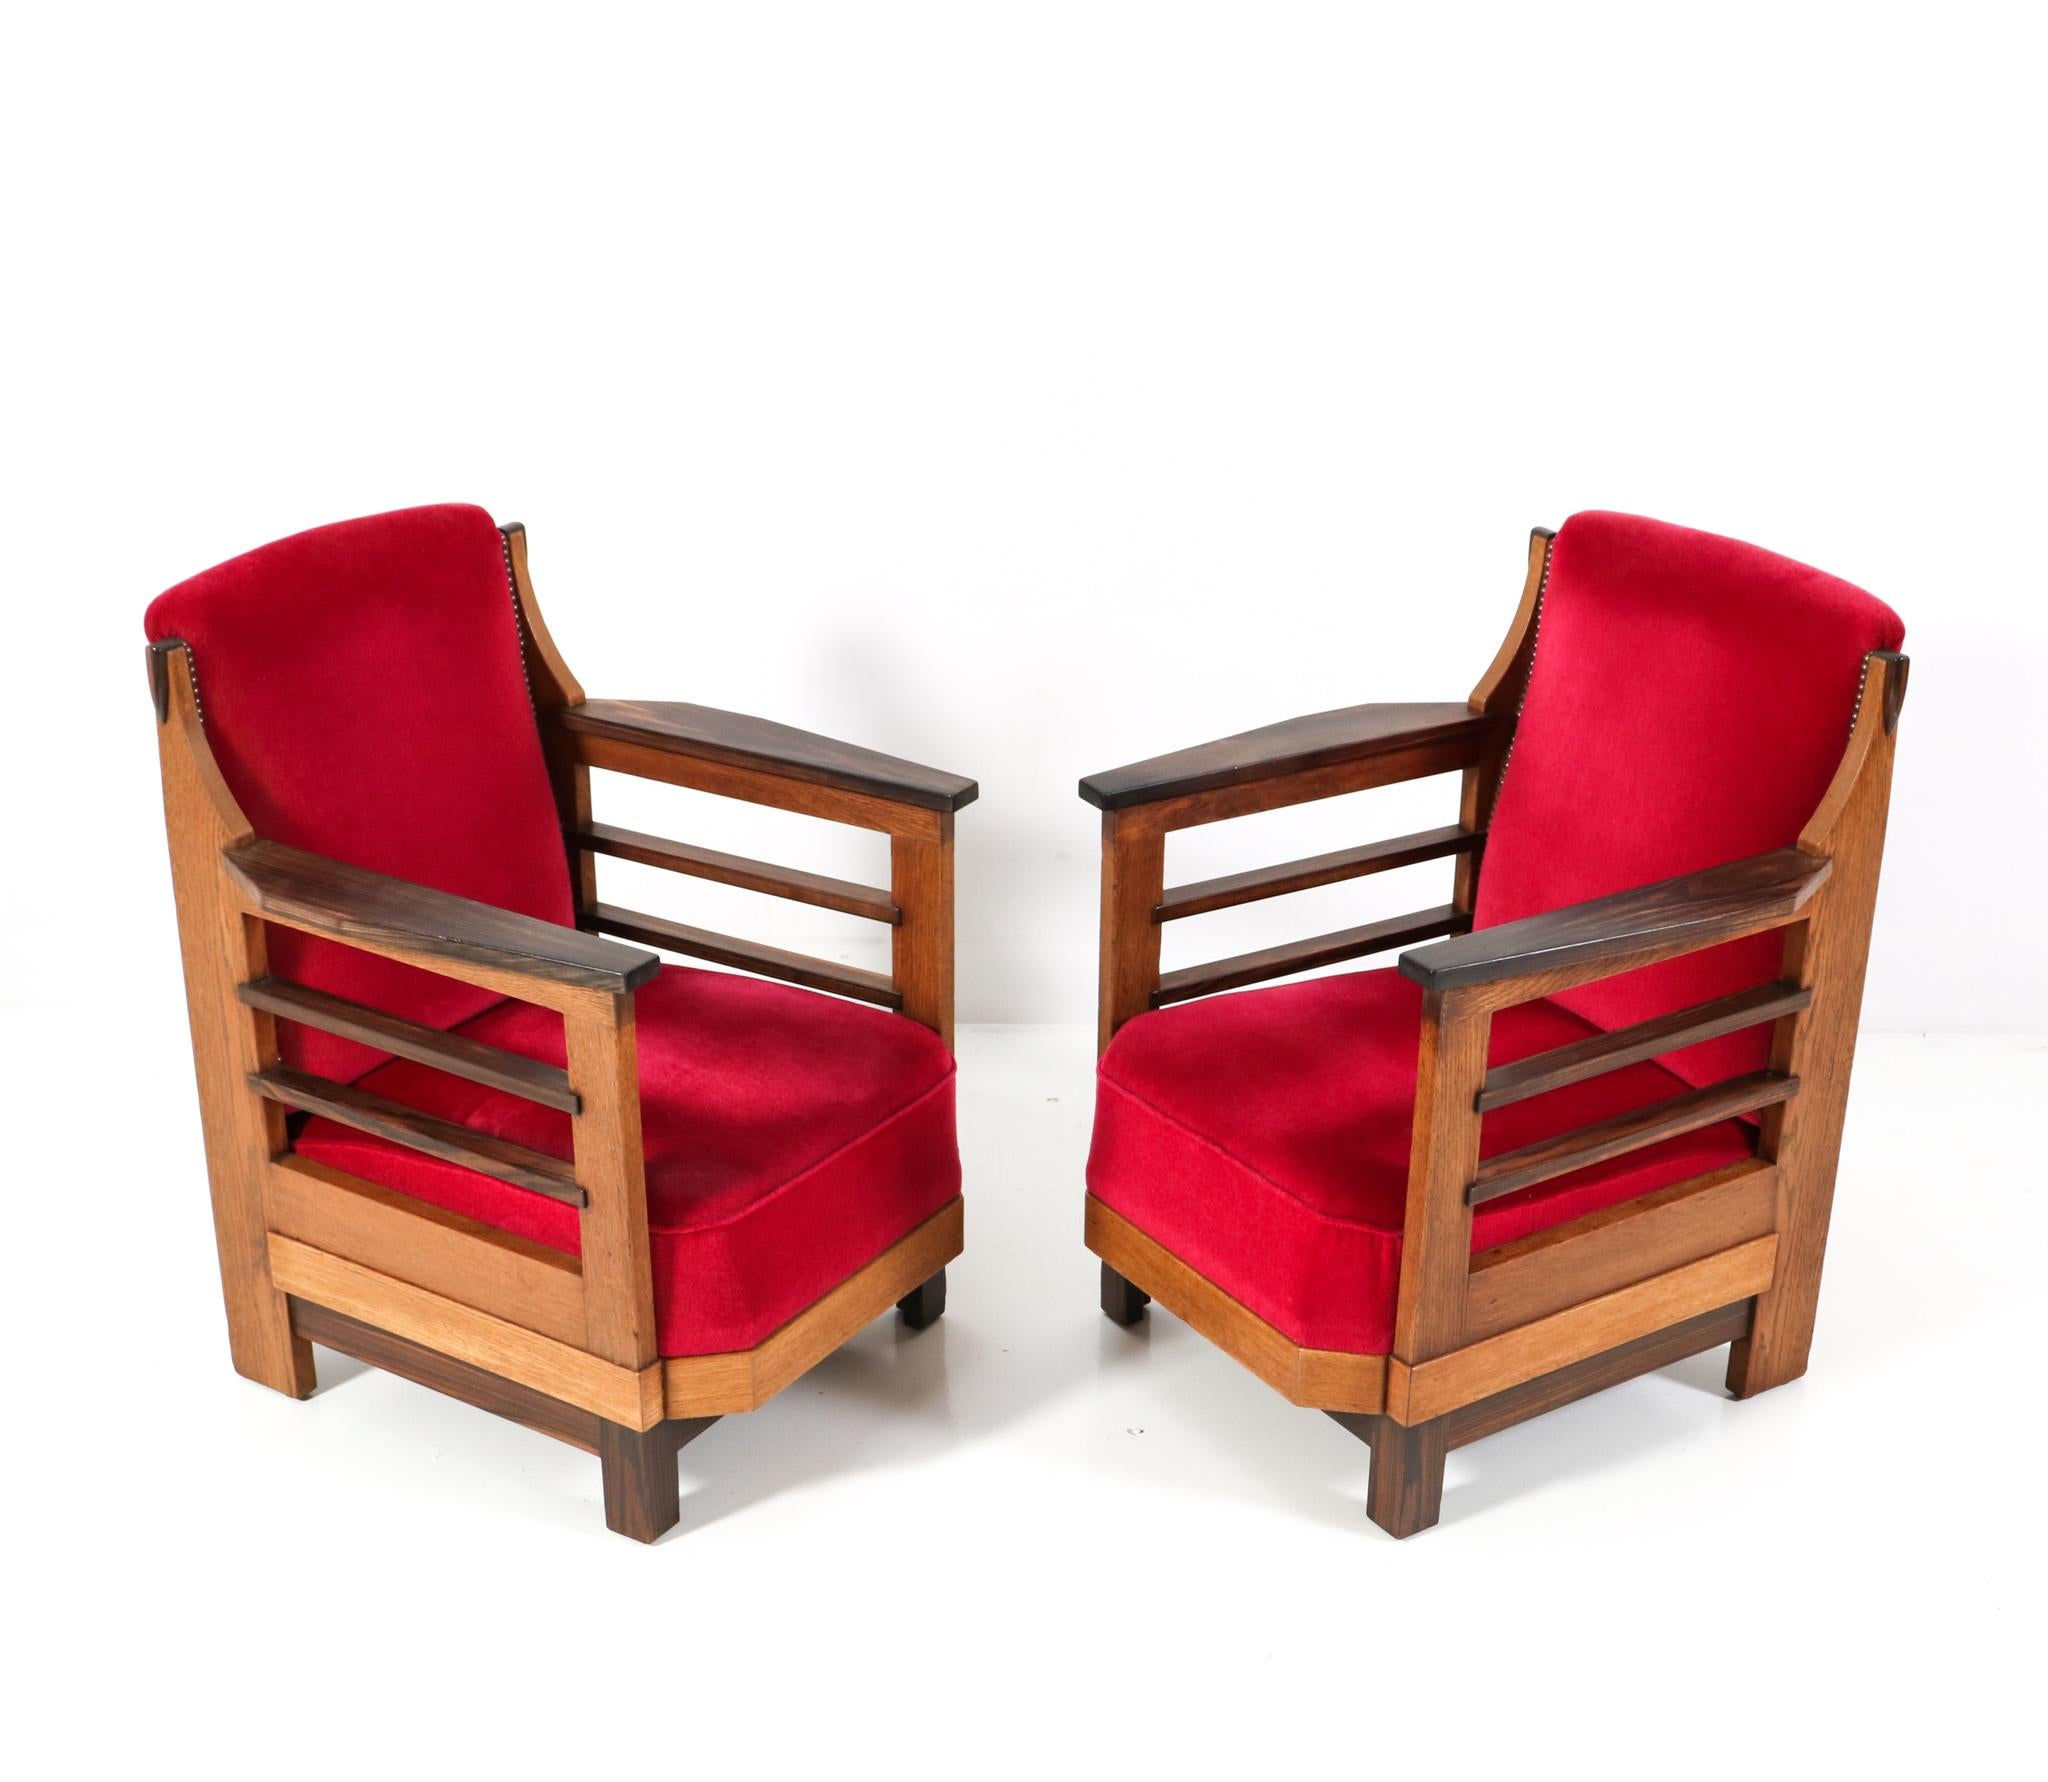 Prächtiges und seltenes Paar von Art Deco Amsterdamse School Lounge Stühlen. Entwurf von Anton Lucas für N.V. Meubelkunst Leiden. Auffälliges niederländisches Design aus den 1920er Jahren. Rahmen aus massiver Eiche mit Armlehnen aus massivem